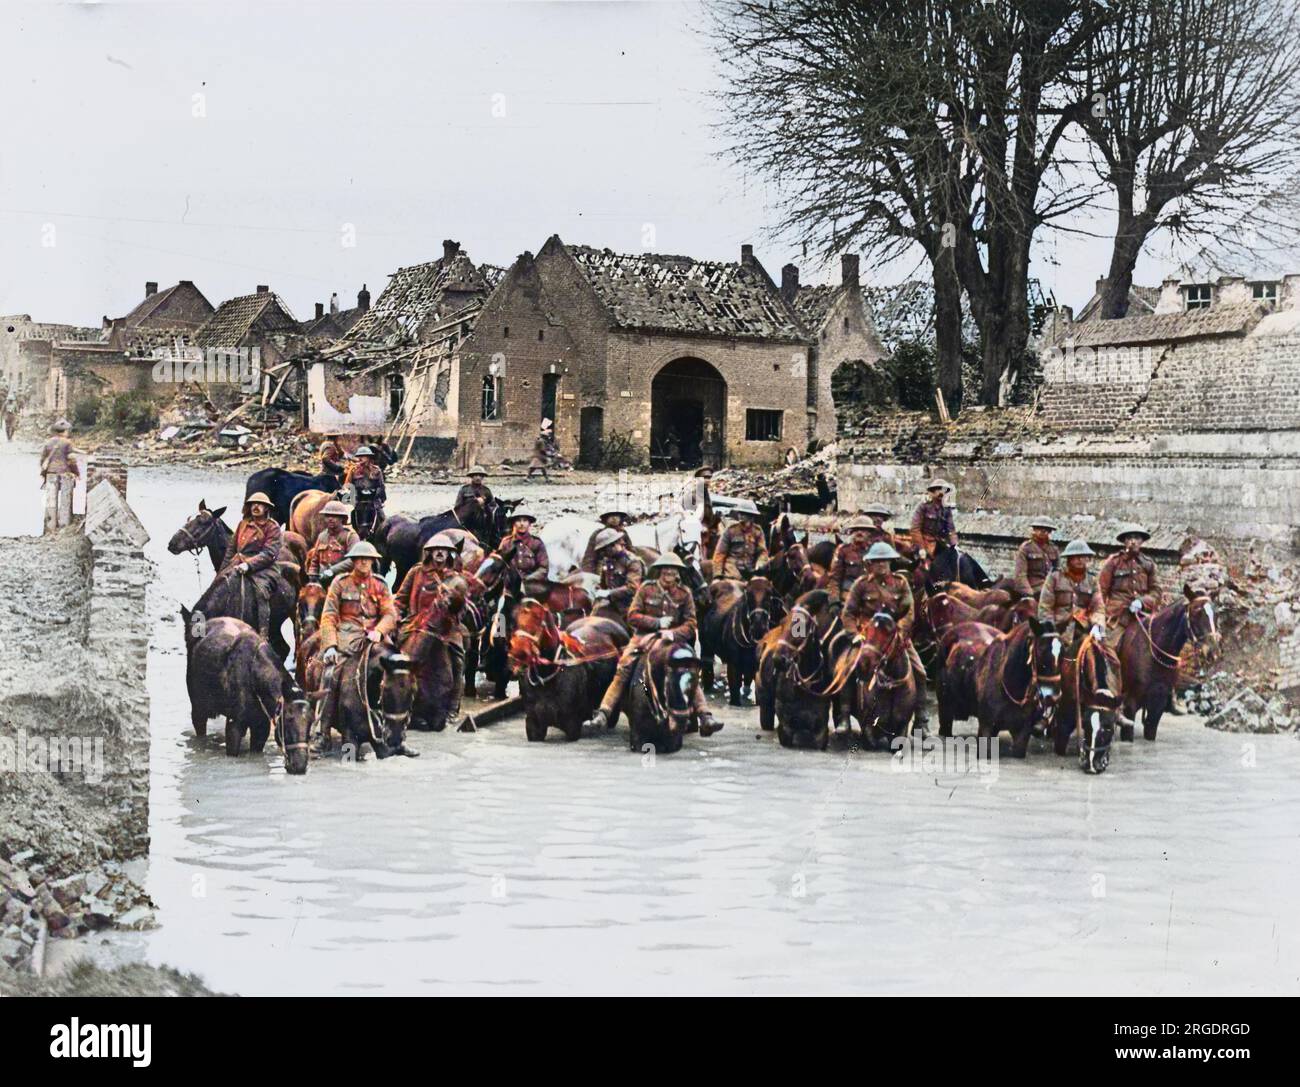 La cavalleria britannica si trovava in acqua su cavalli in una città in rovina in Francia sul fronte britannico durante la prima guerra mondiale nel 1917 Foto Stock